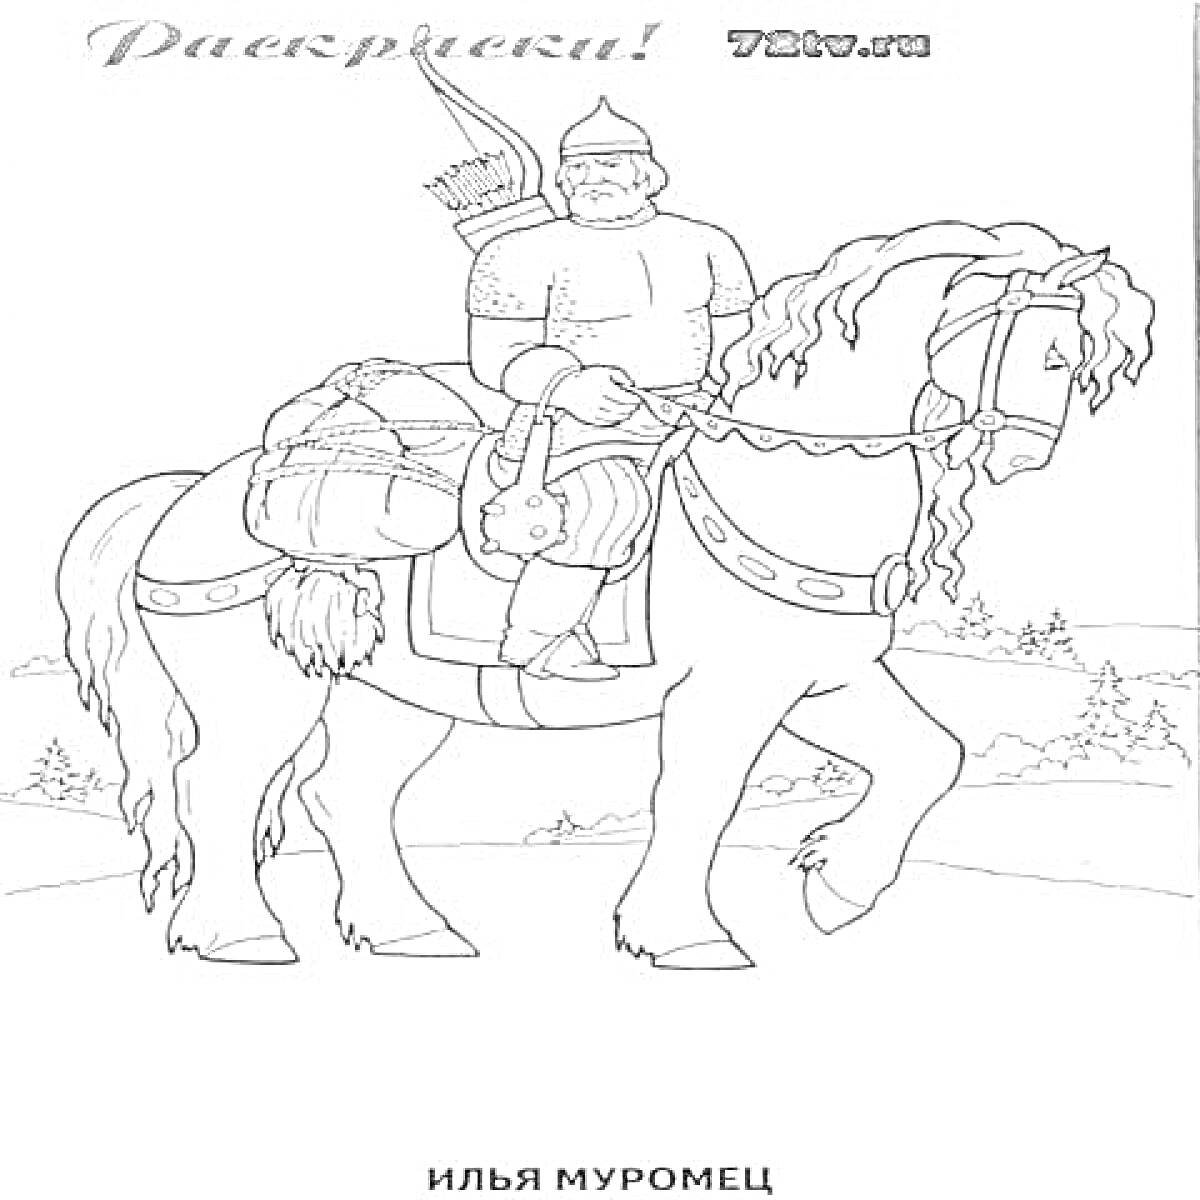 Илья Муромец на коне со снаряжением на фоне леса